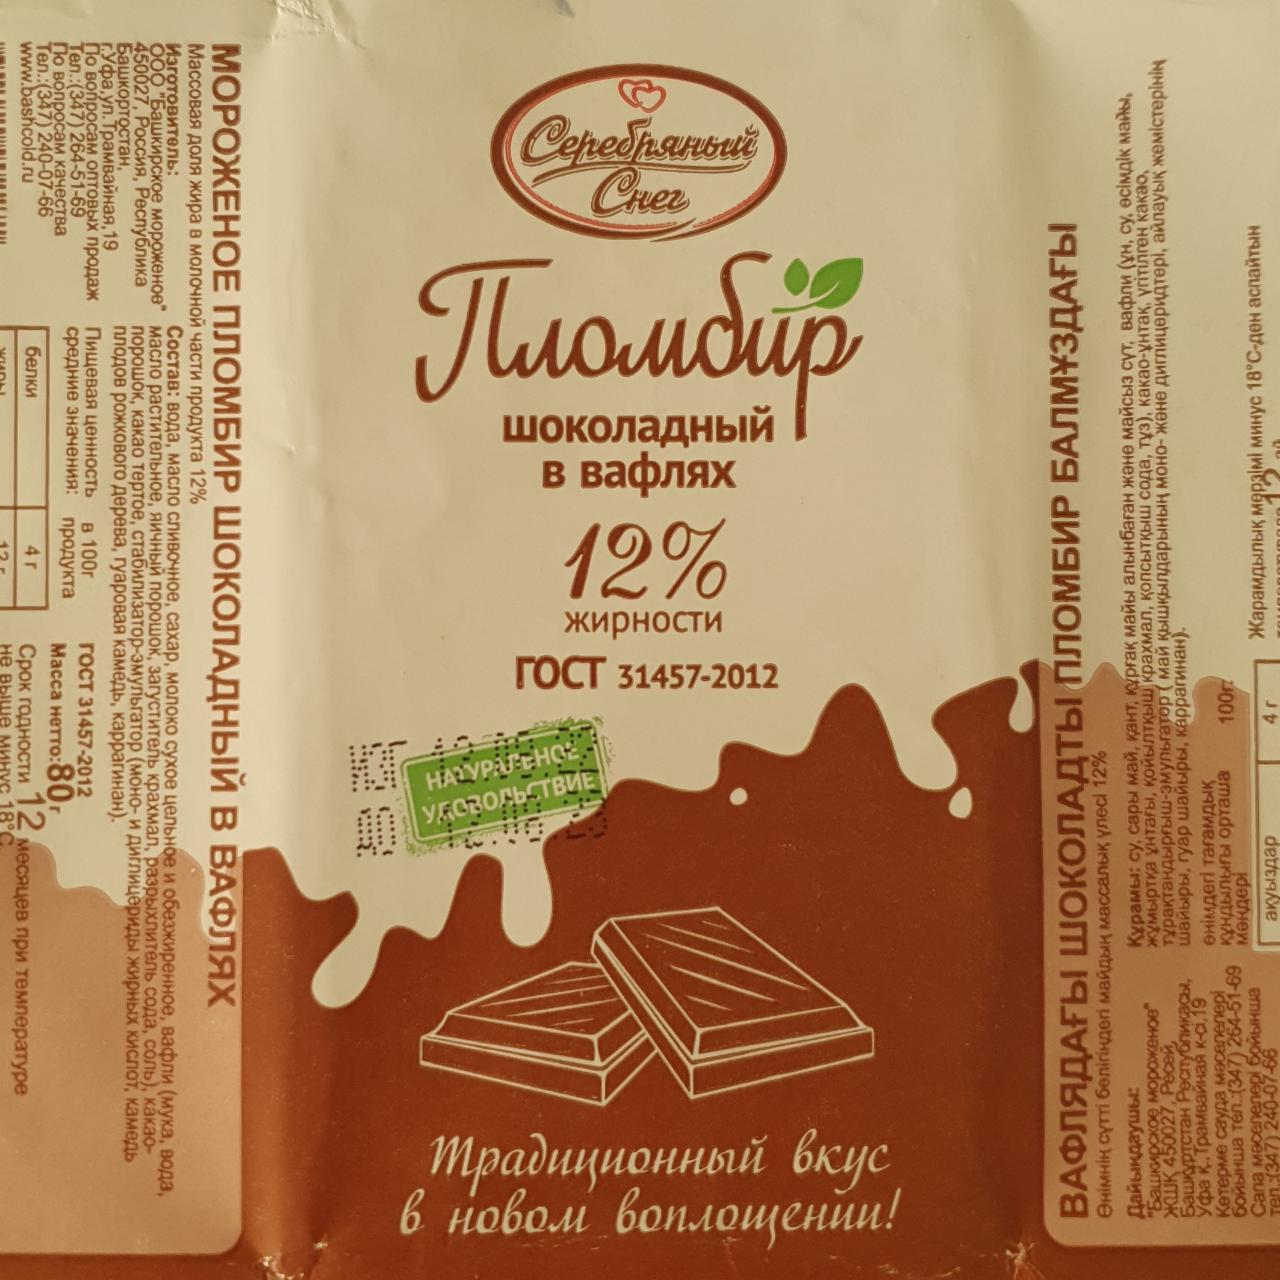 Фото - Мороженое пломбир шоколадный в вафлях 12% жирности ГОСТ Серебряный снег